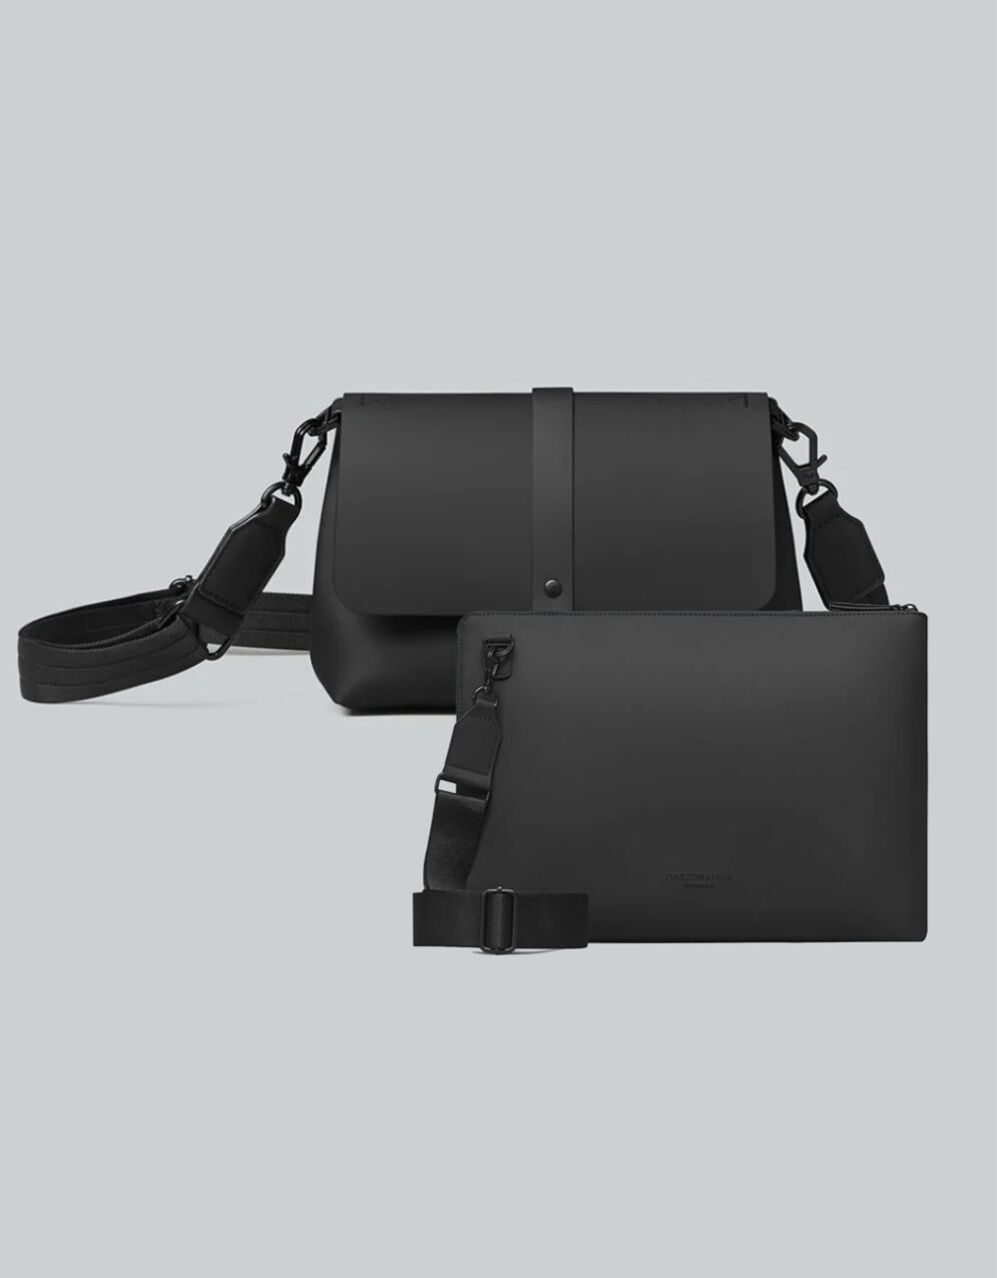 Vintage Leather Laptop Bag 16″ Messenger Handmade Briefcase Crossbody  Shoulder Bag – Online Leather Bag Store